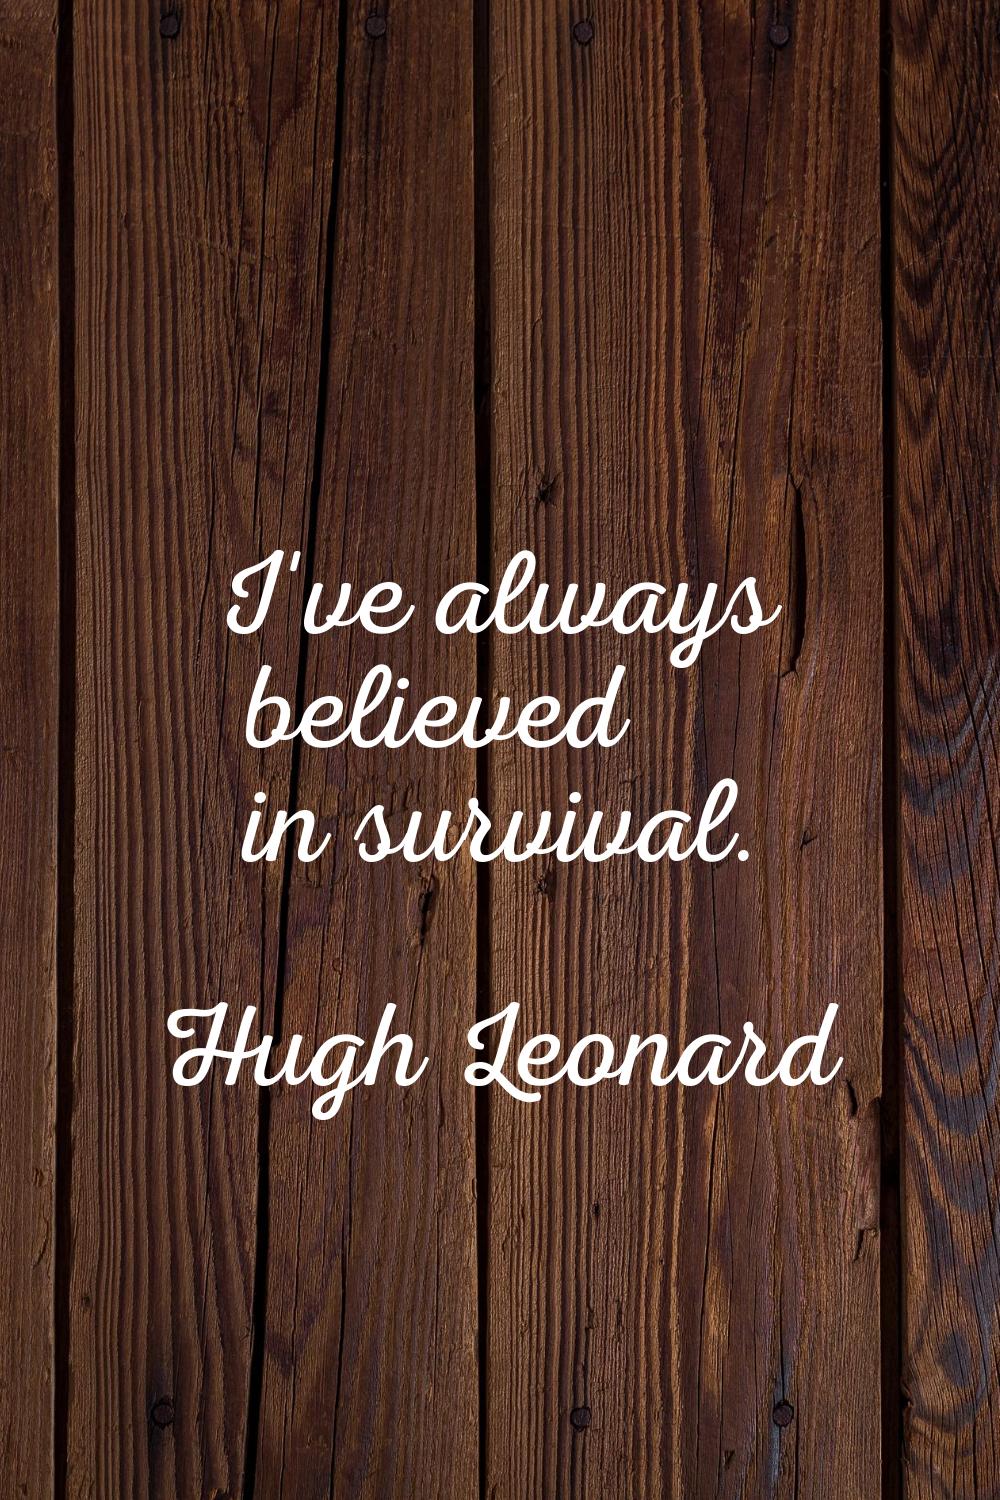 I've always believed in survival.